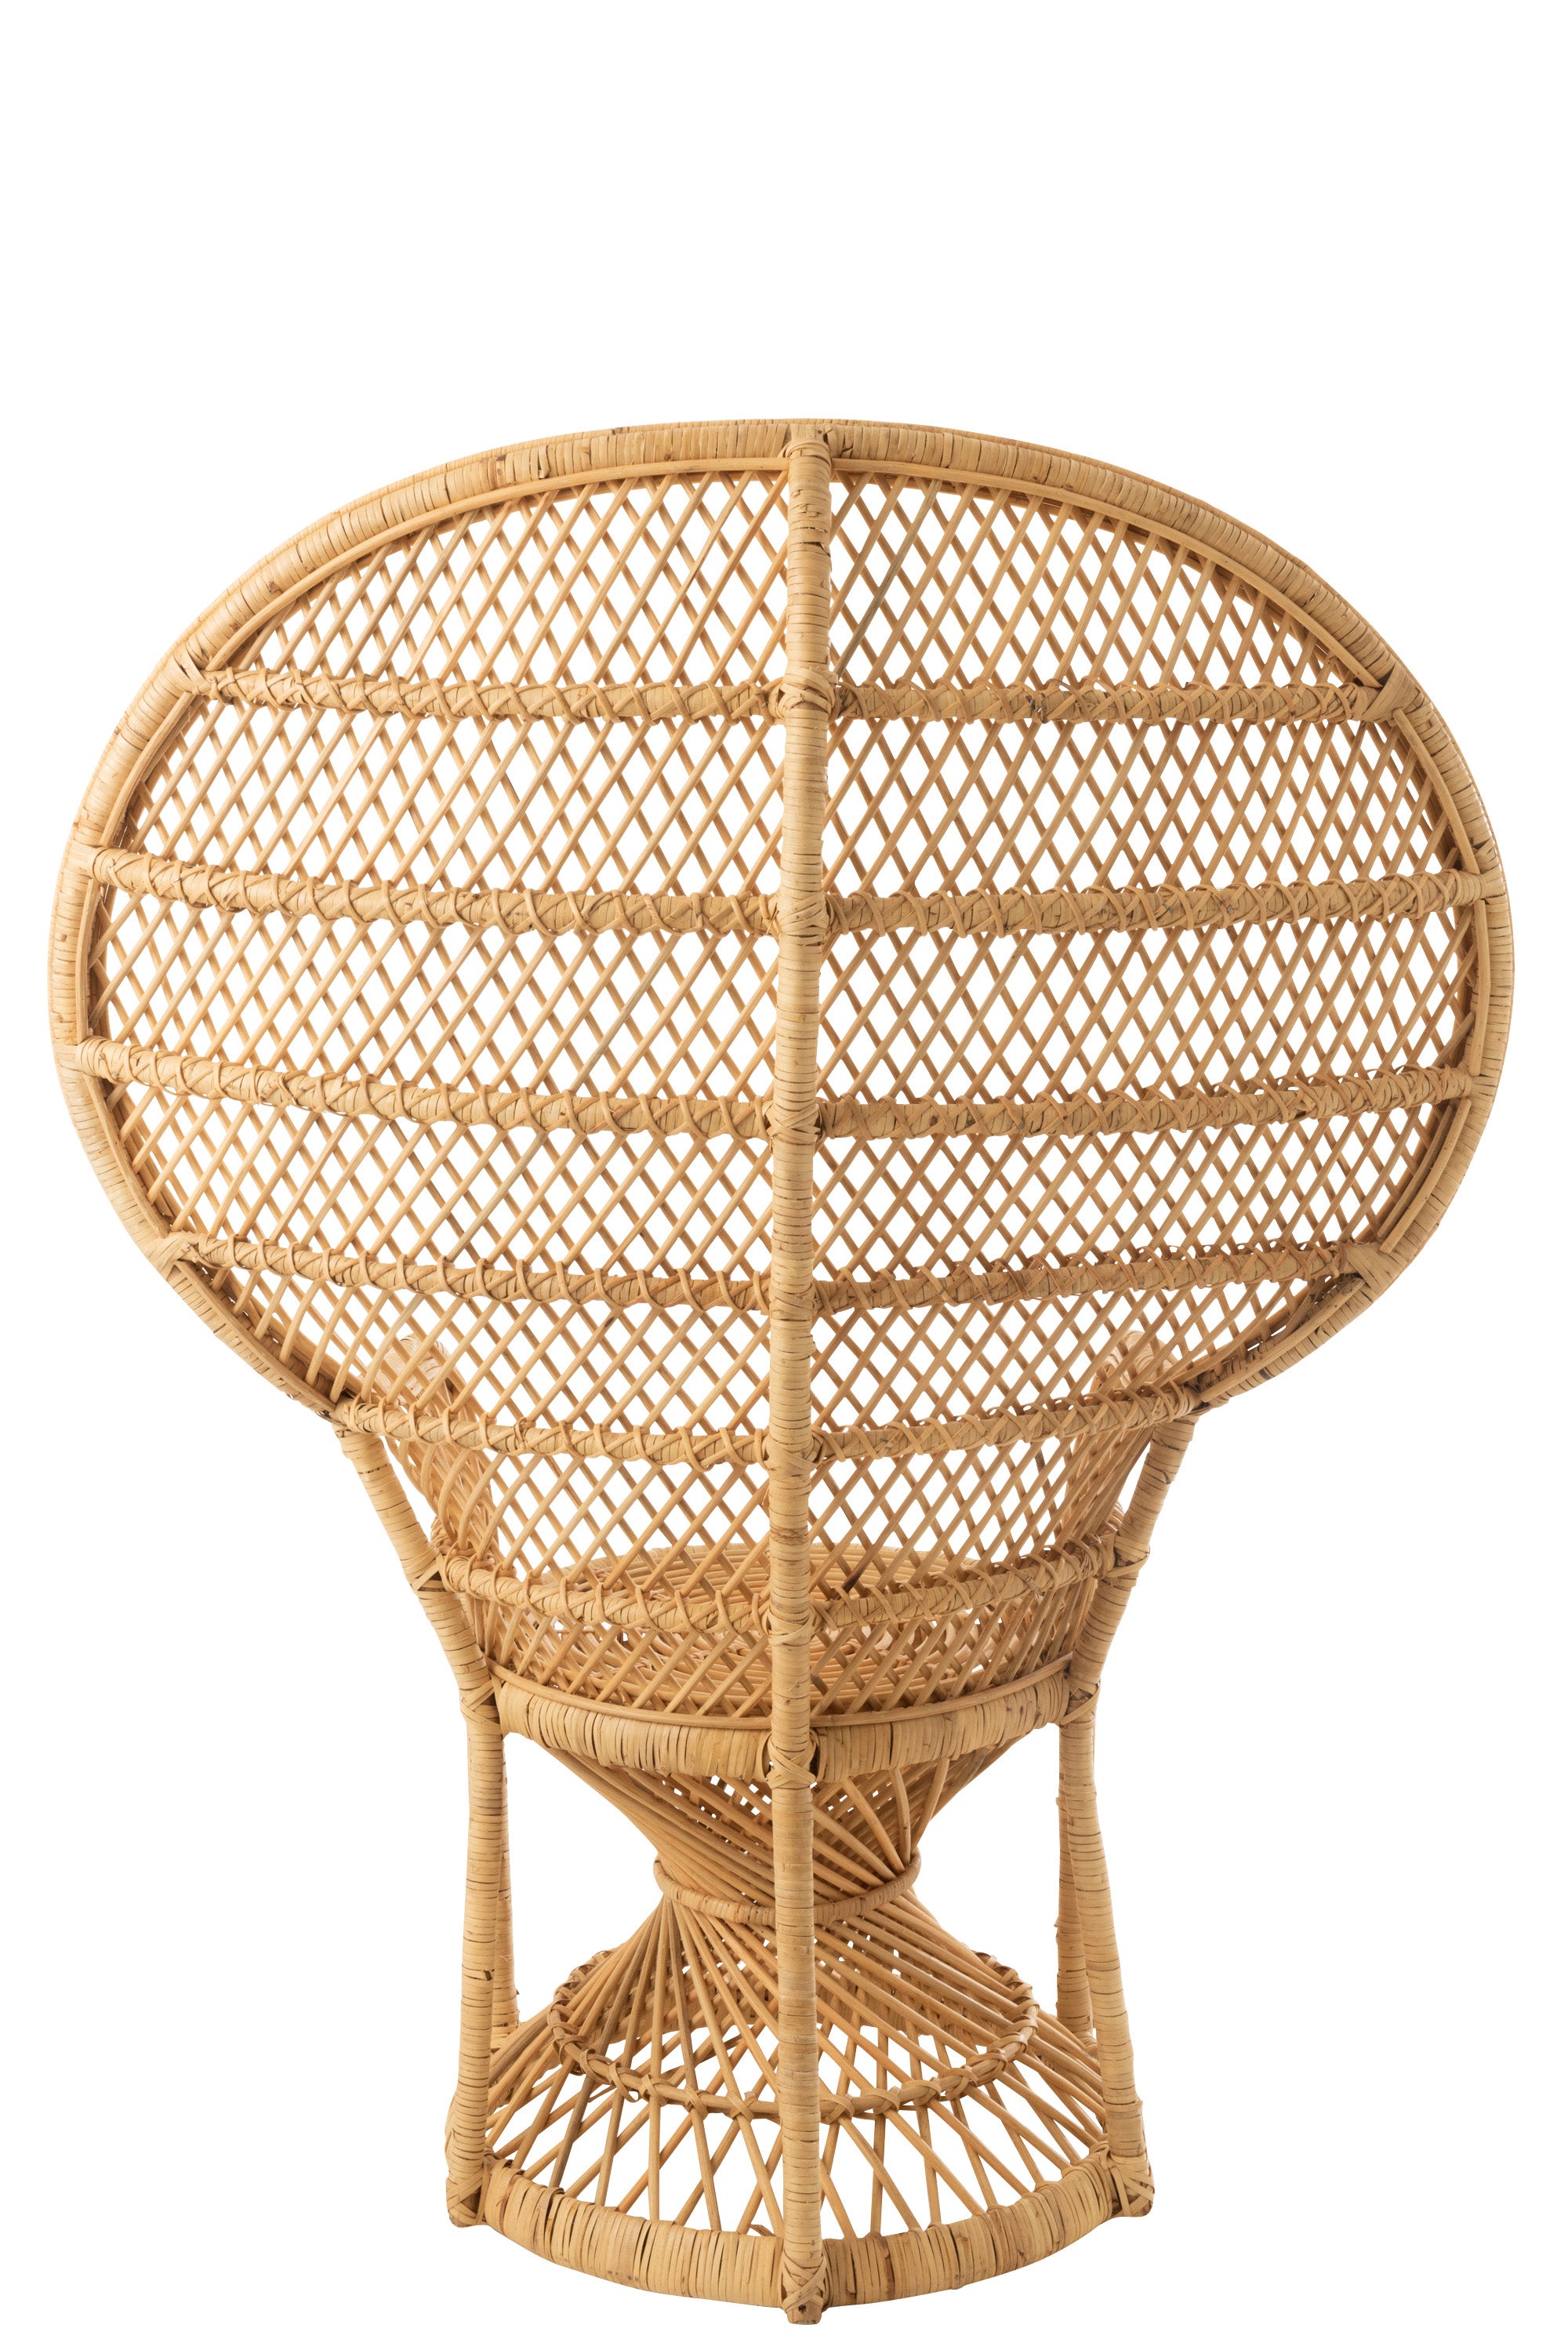 Pfauensessel aus Schilf, Rattan und Bambus, (58,5x101,5 x134cm)